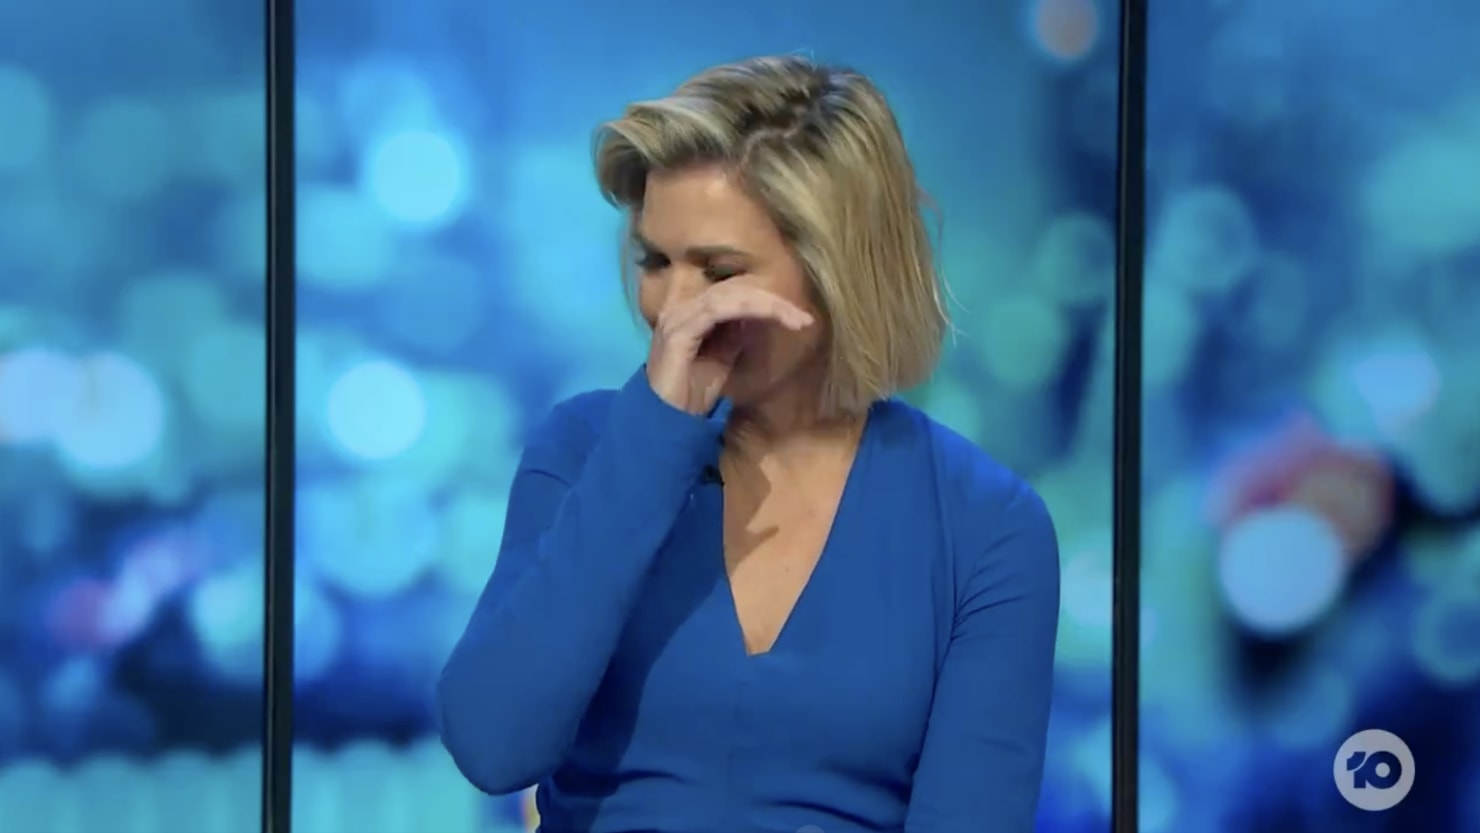 المذيعة التلفزيونية الأسترالية سارة هاريس تبكي بعد مقتل زميلها جيسي بيرد